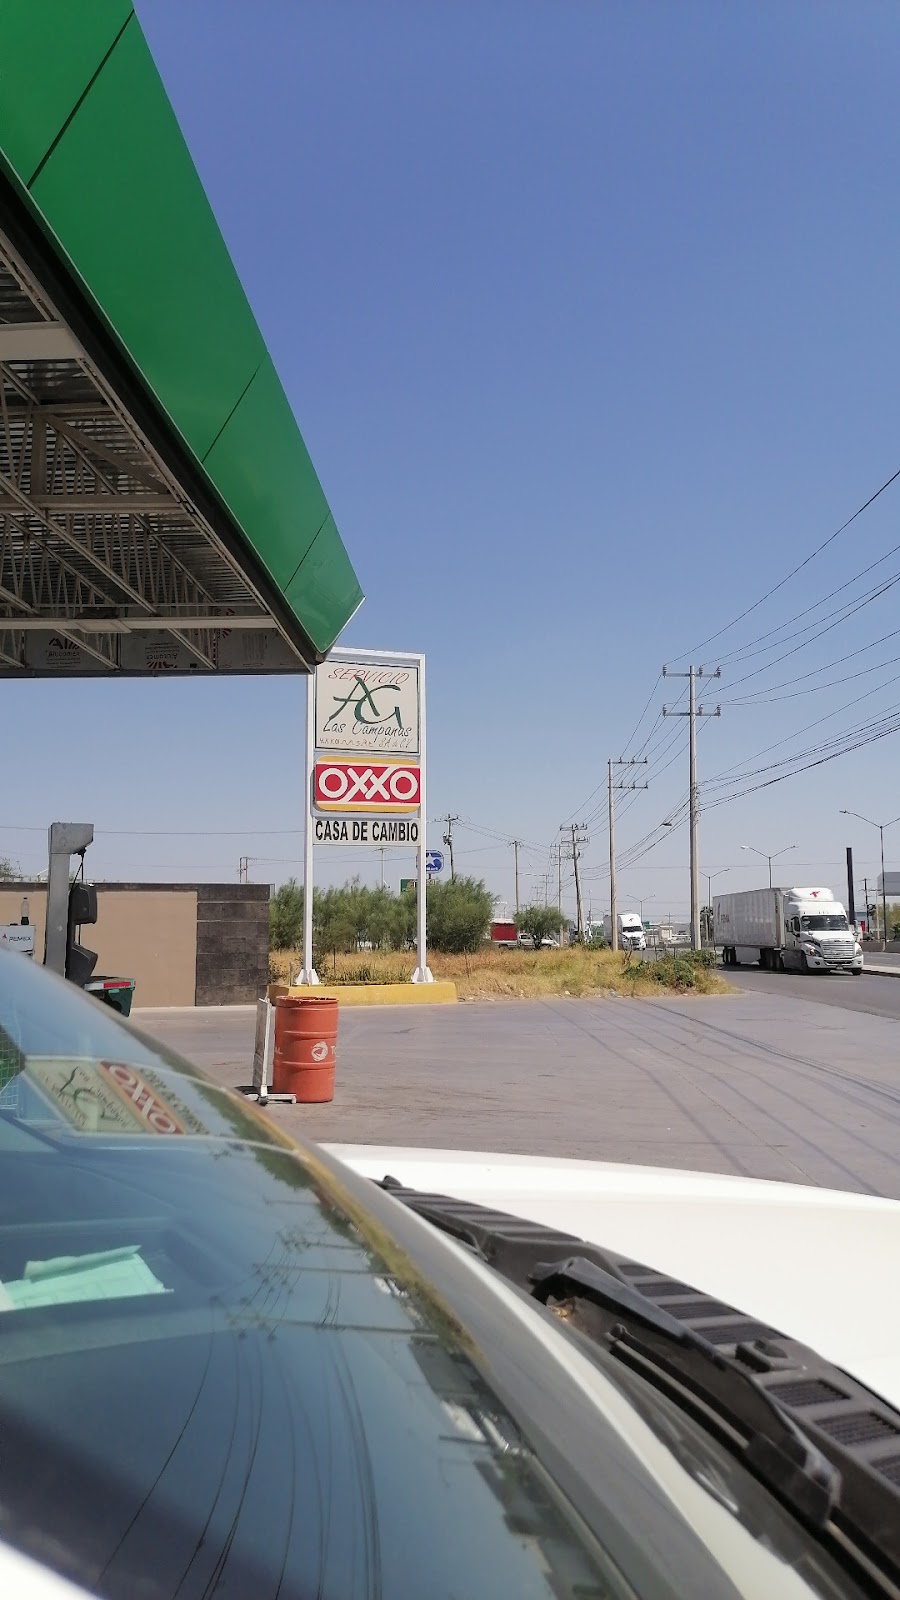 Gasolinera Pemex | Carr. Nacional No. 8550, Colinas del Sur, 88295 Nuevo Laredo, Tamps., Mexico | Phone: 867 718 2840